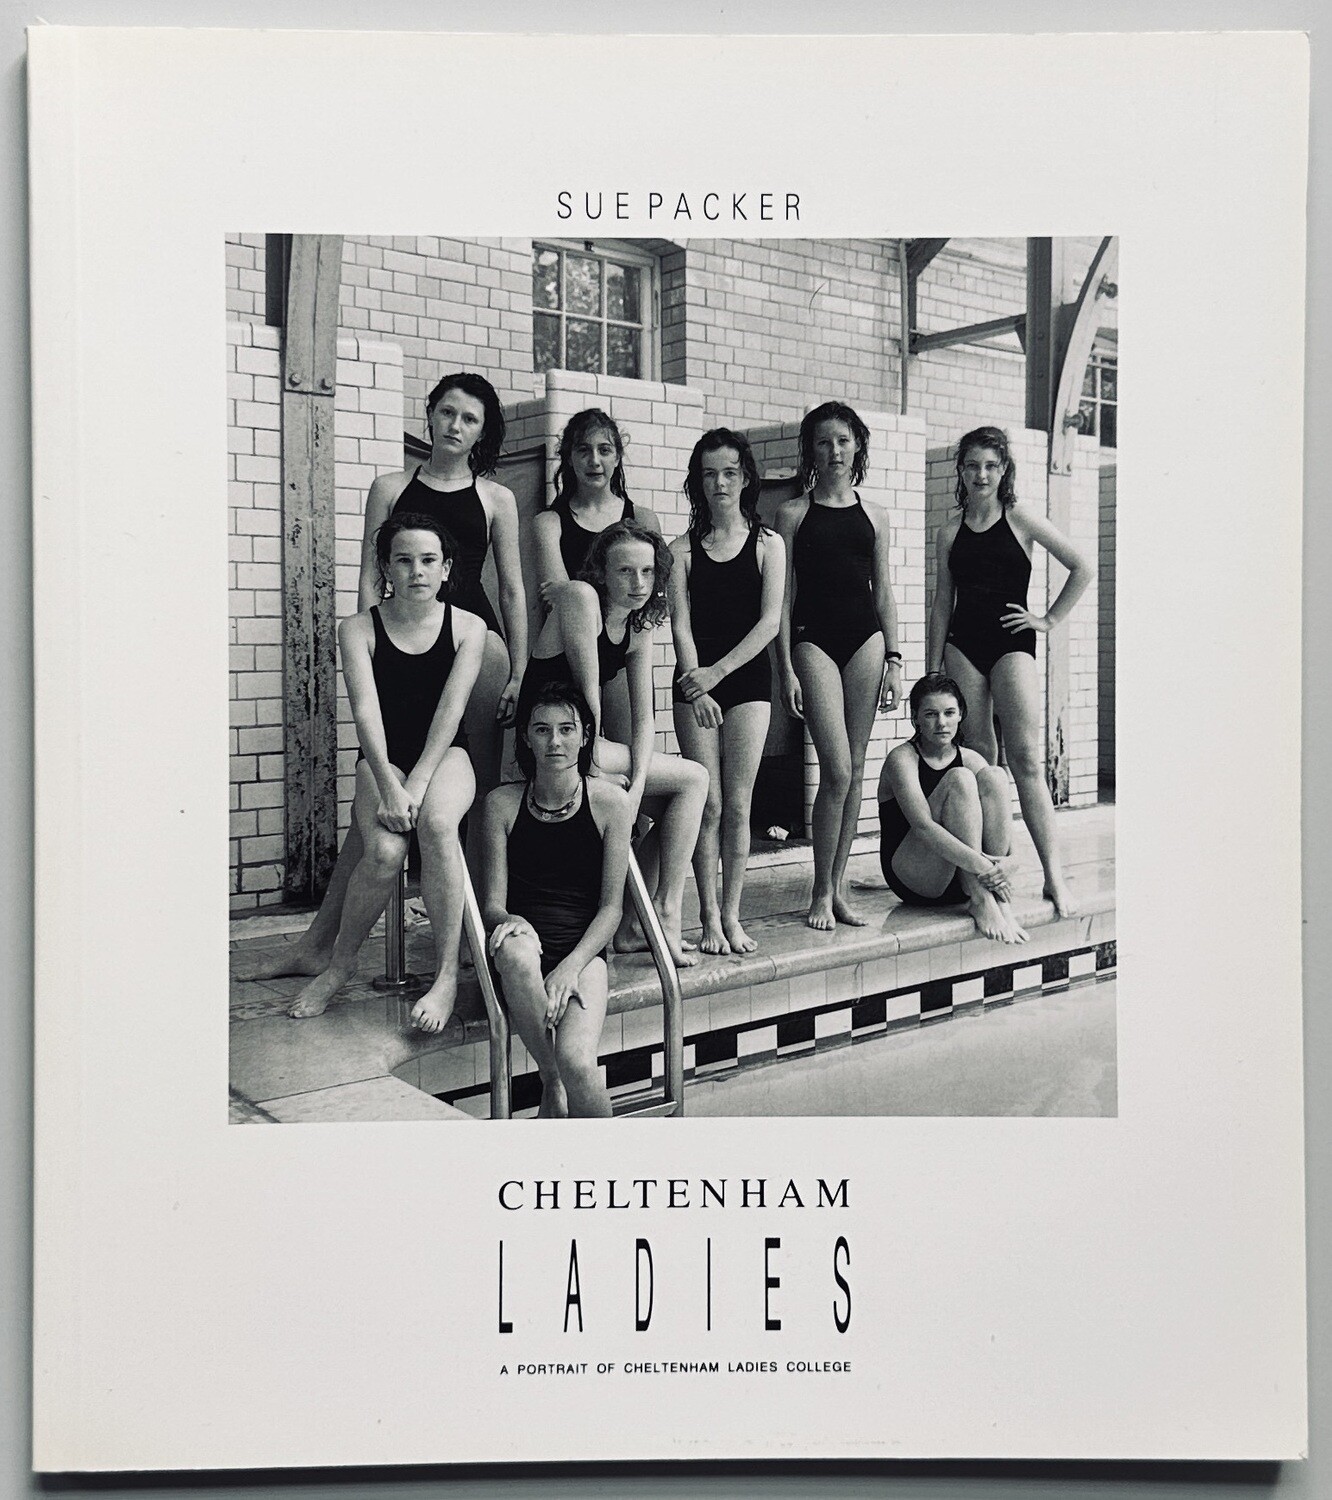 Cheltenham Ladies College